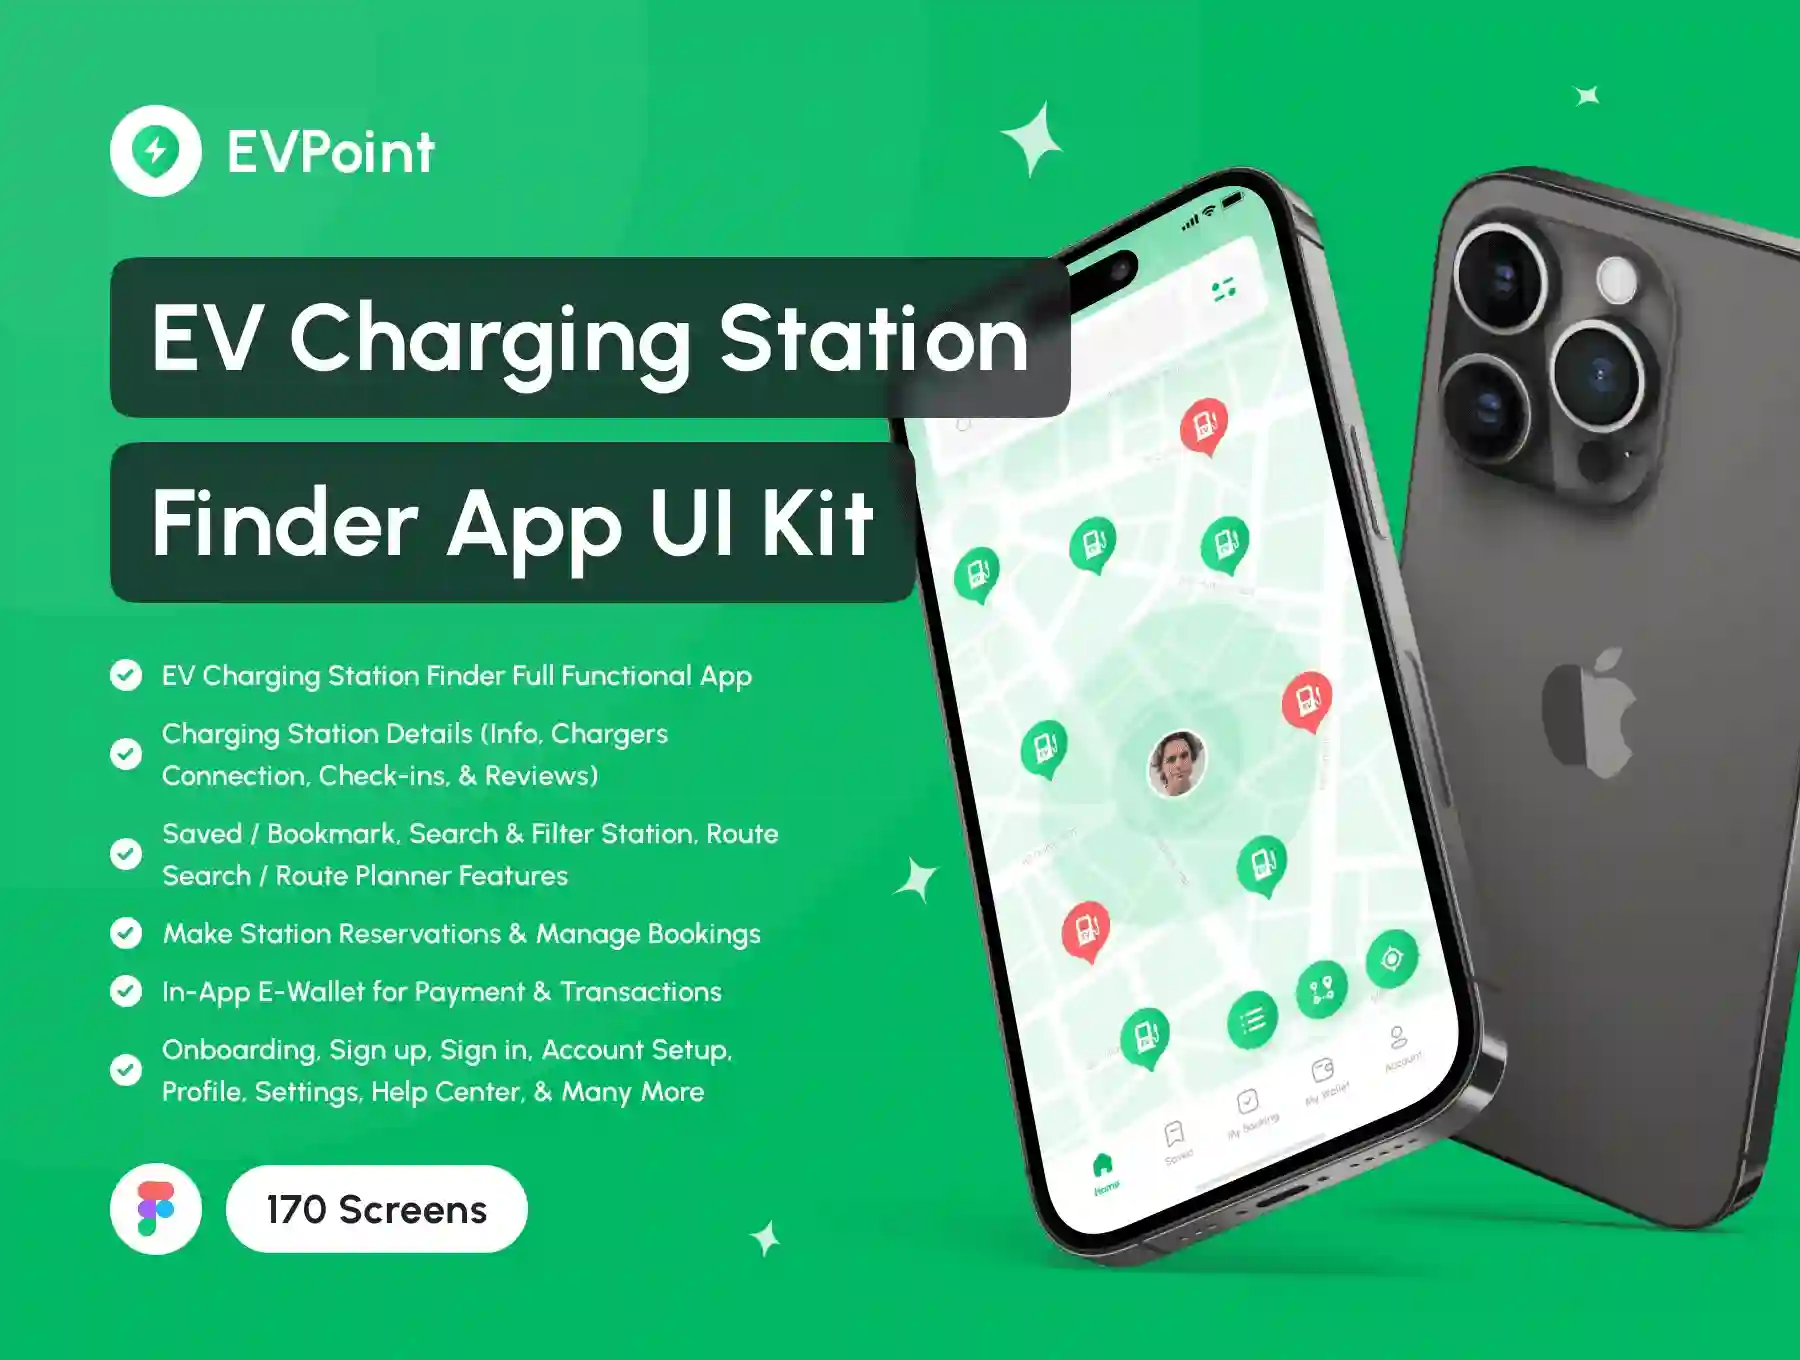 Charging Station Finder App UI Kit